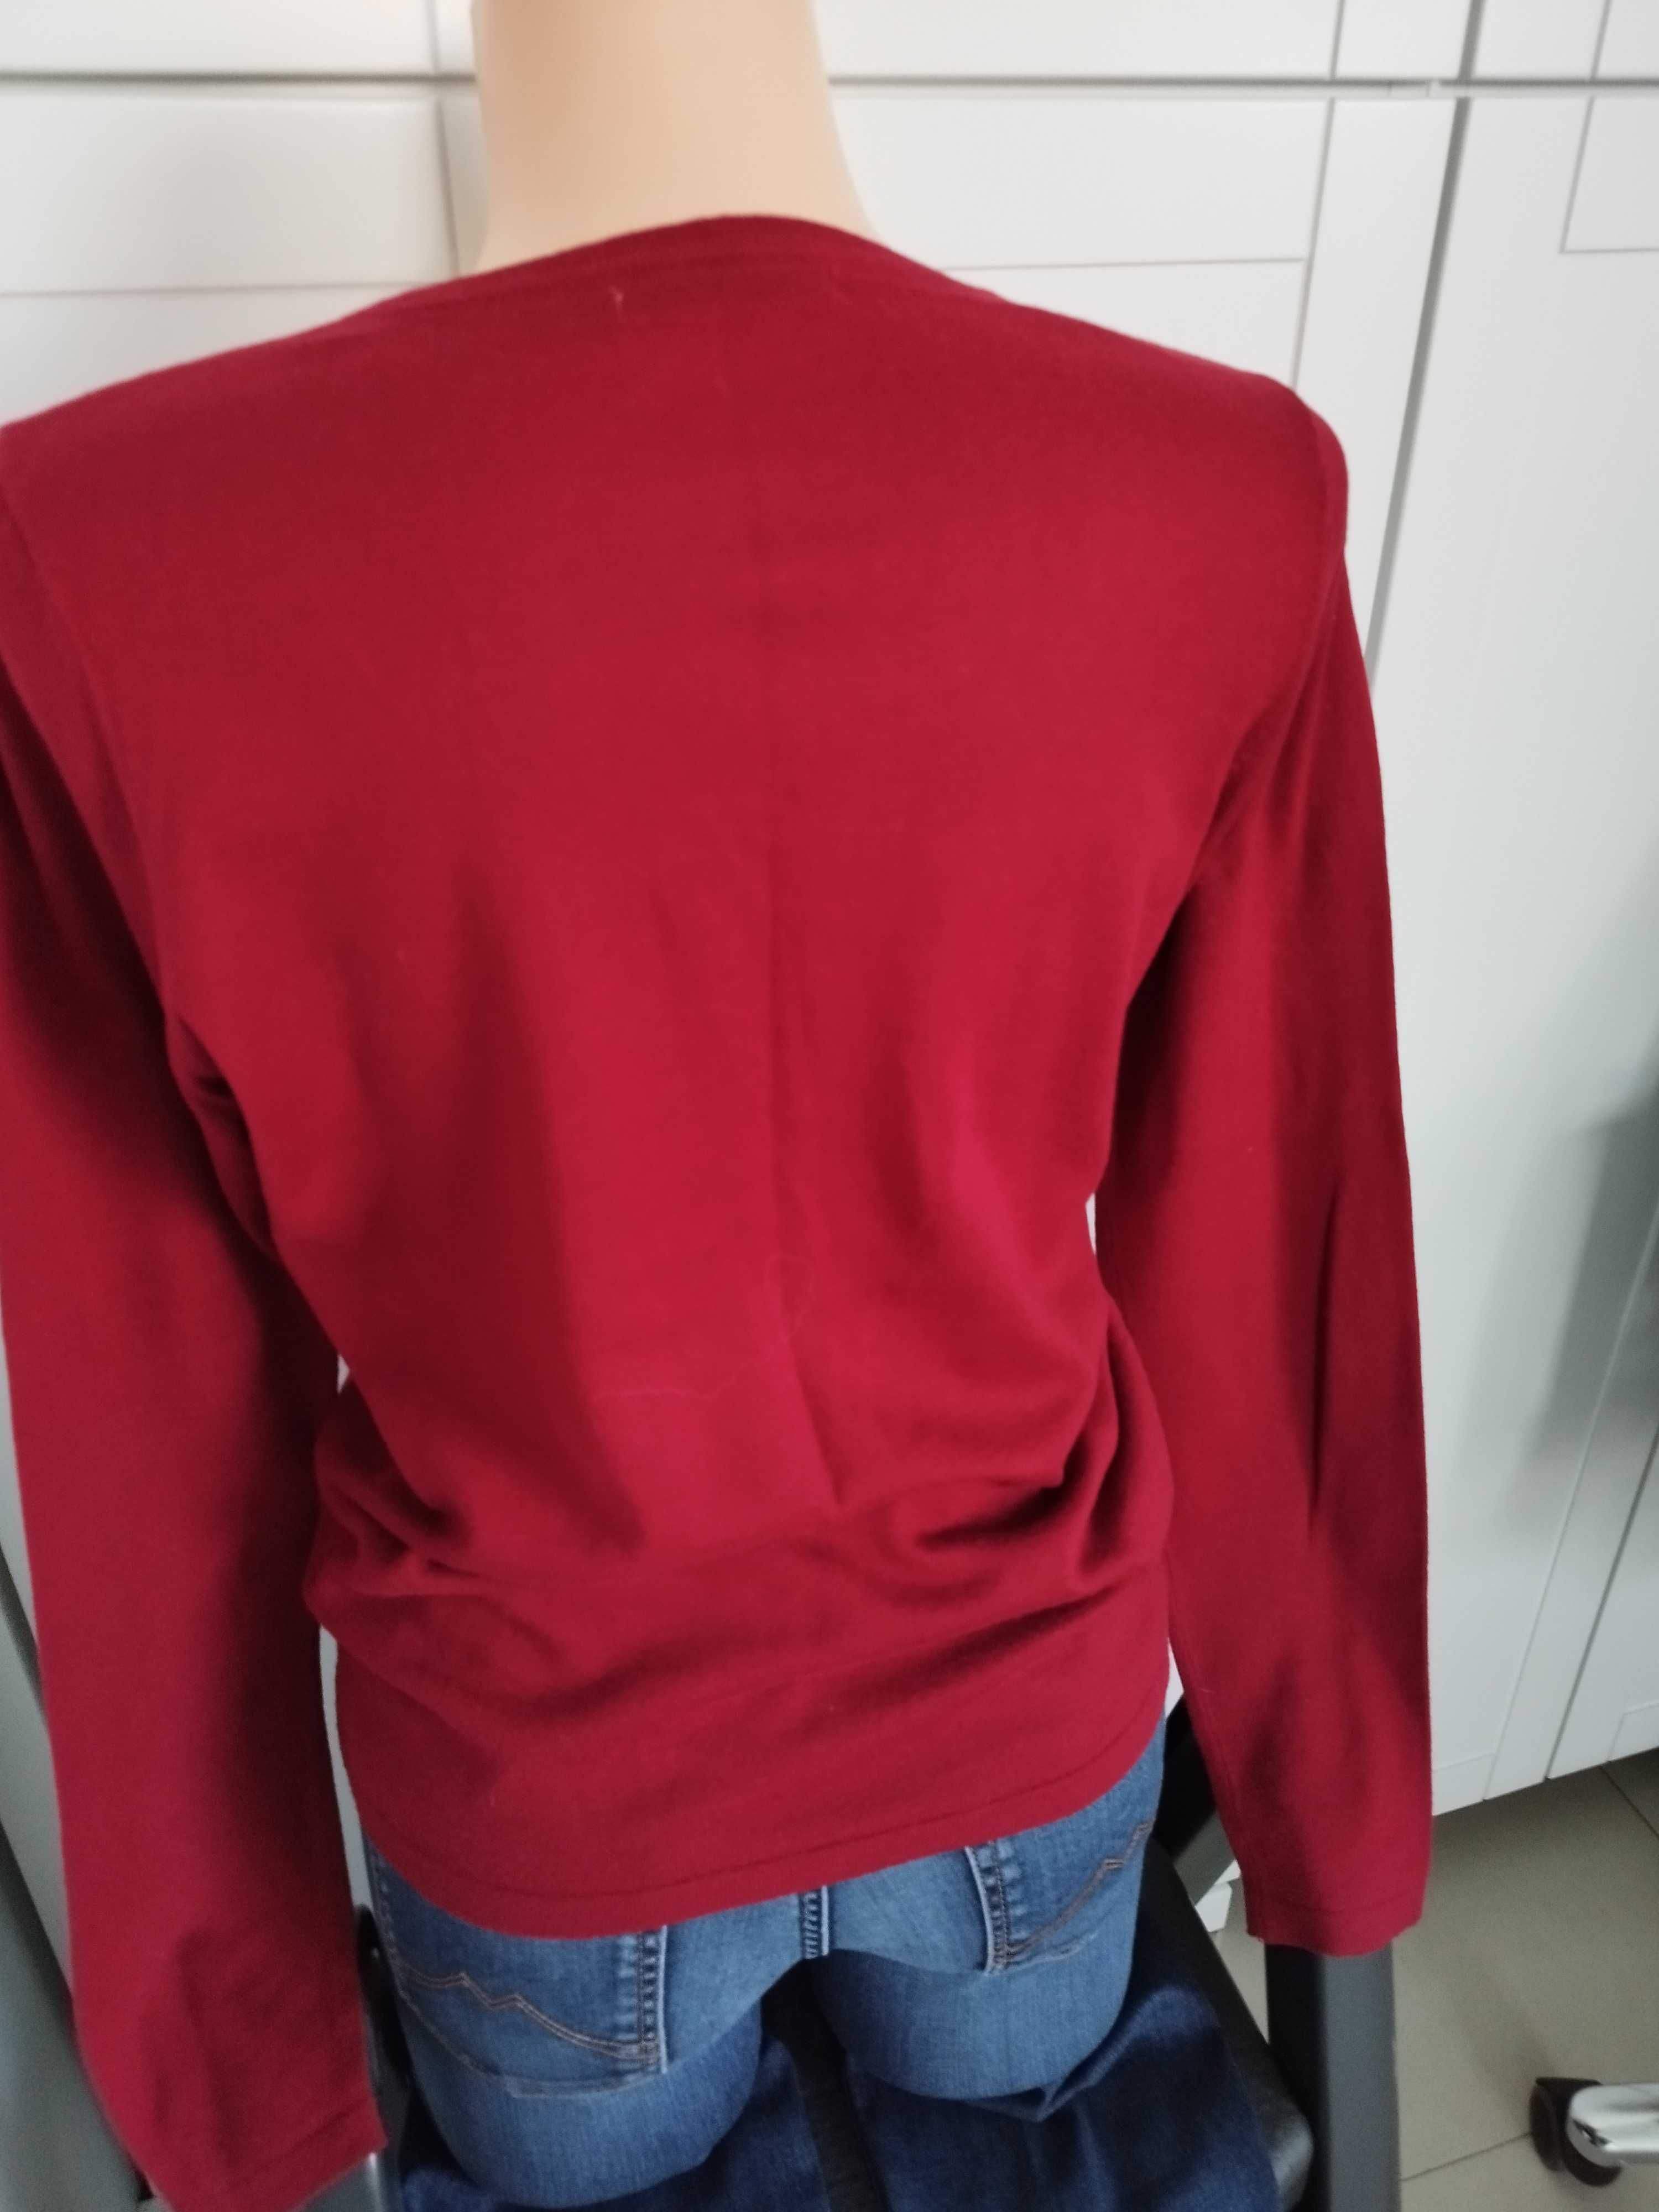 Czerwony cienki sweterek, rozmiar M, Green House